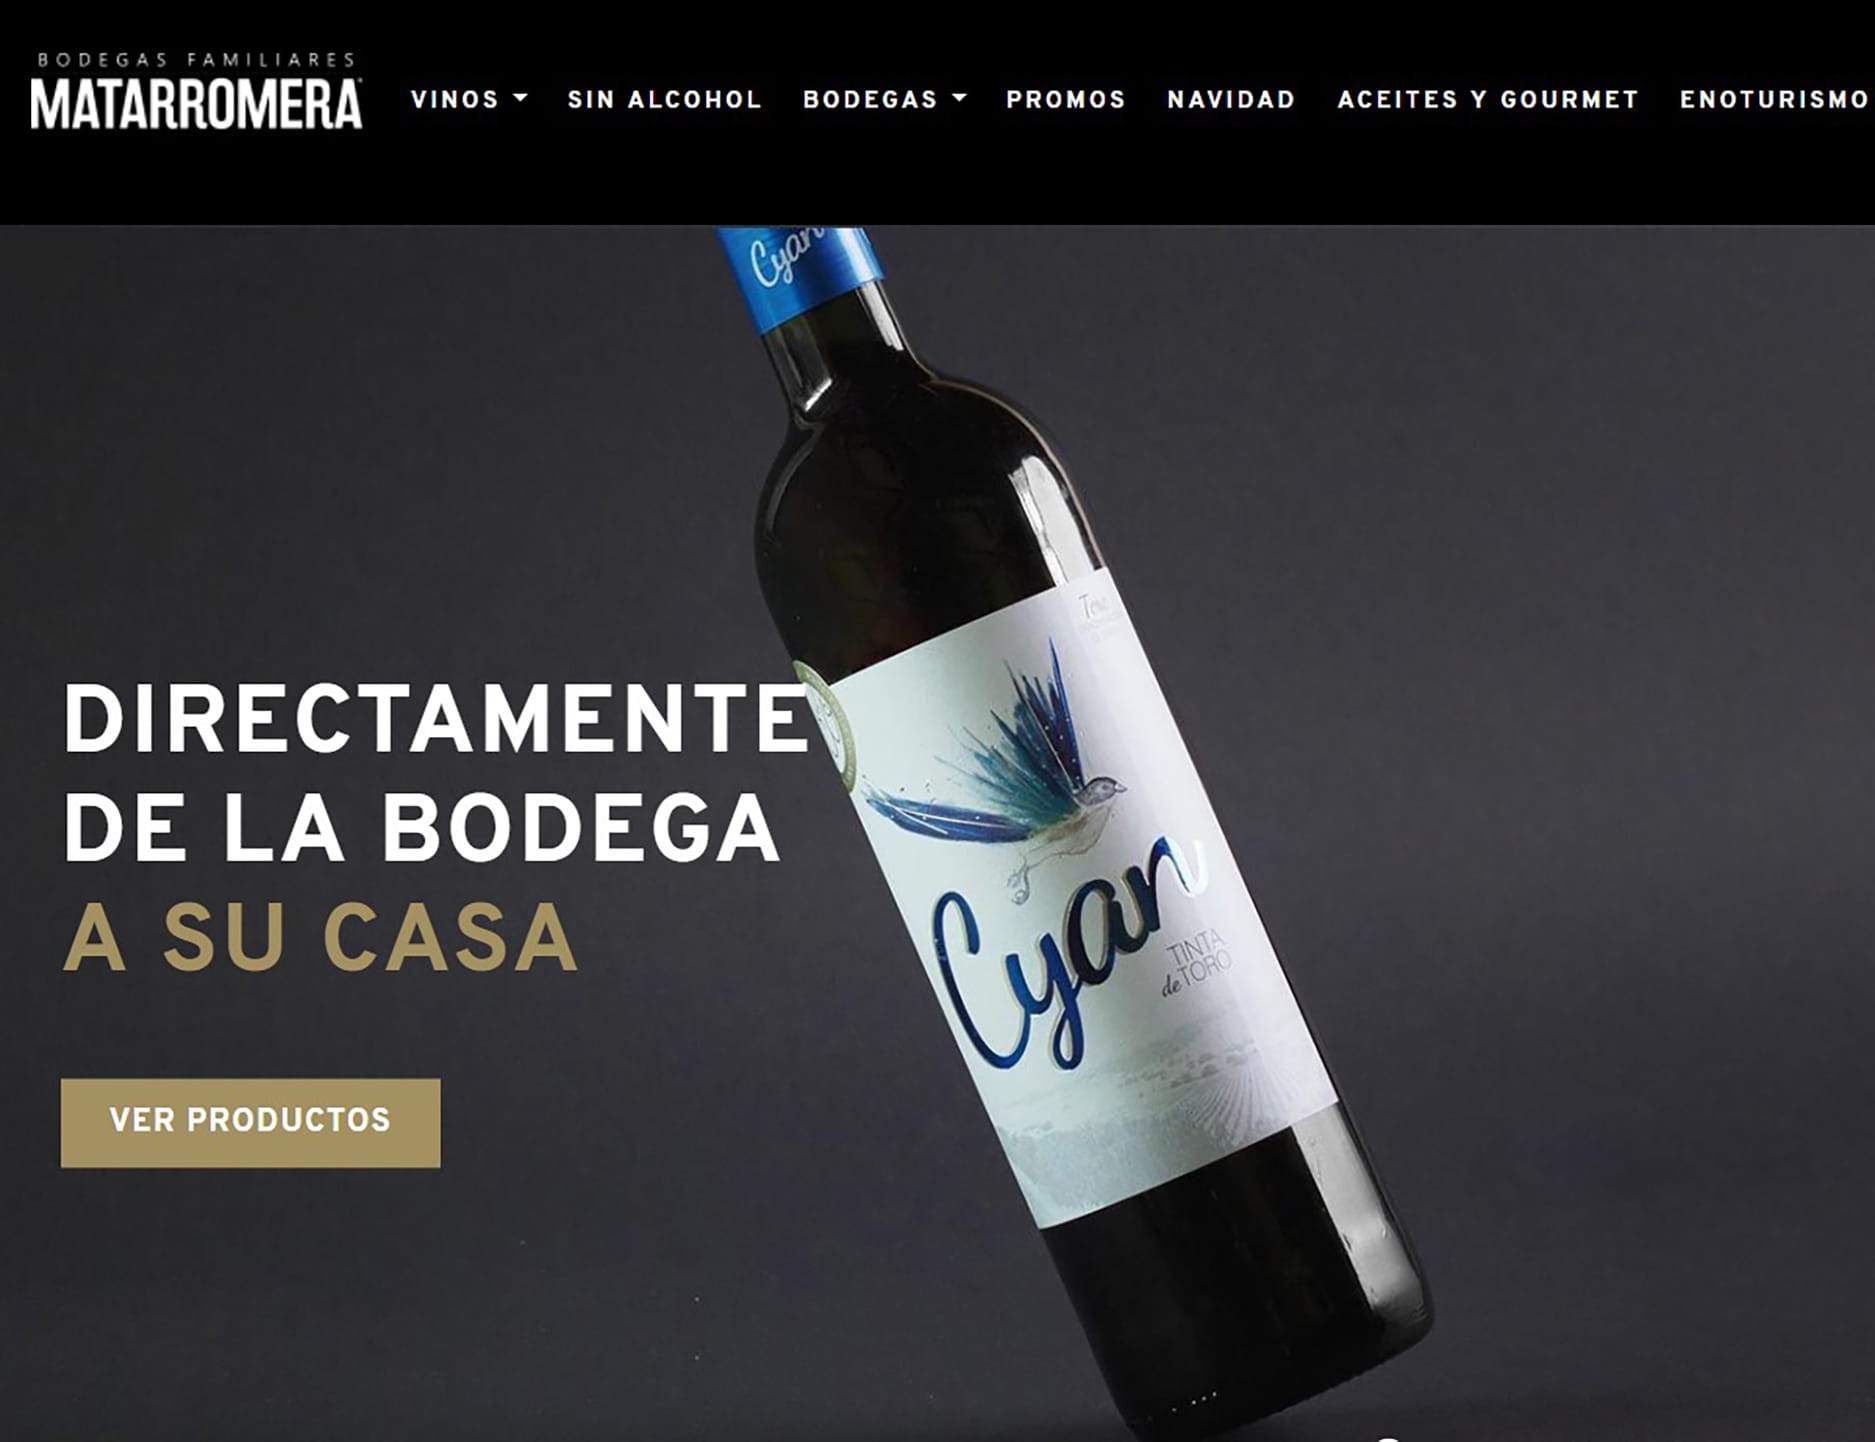 Matarromera integrates its new online shop into its website